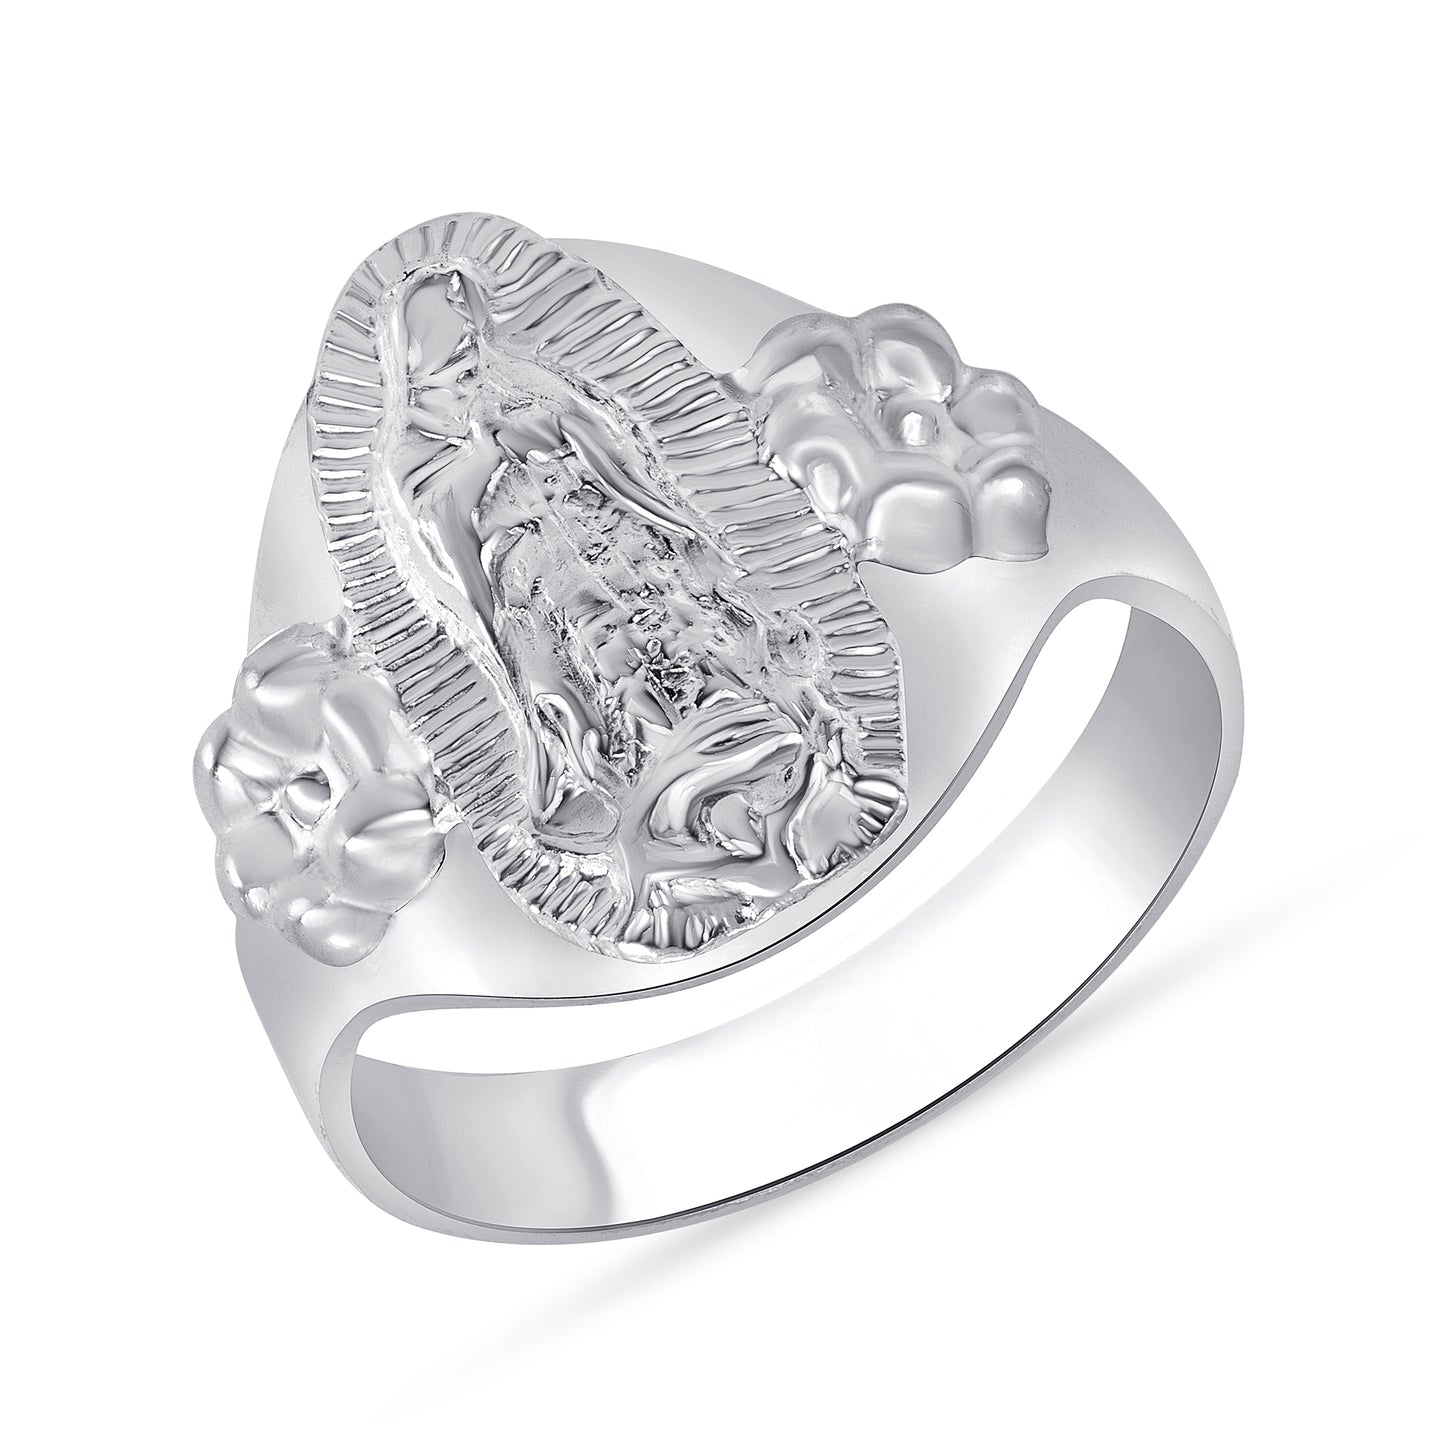 Silver 925 MEX Virgin Mary Ring. VMRING01